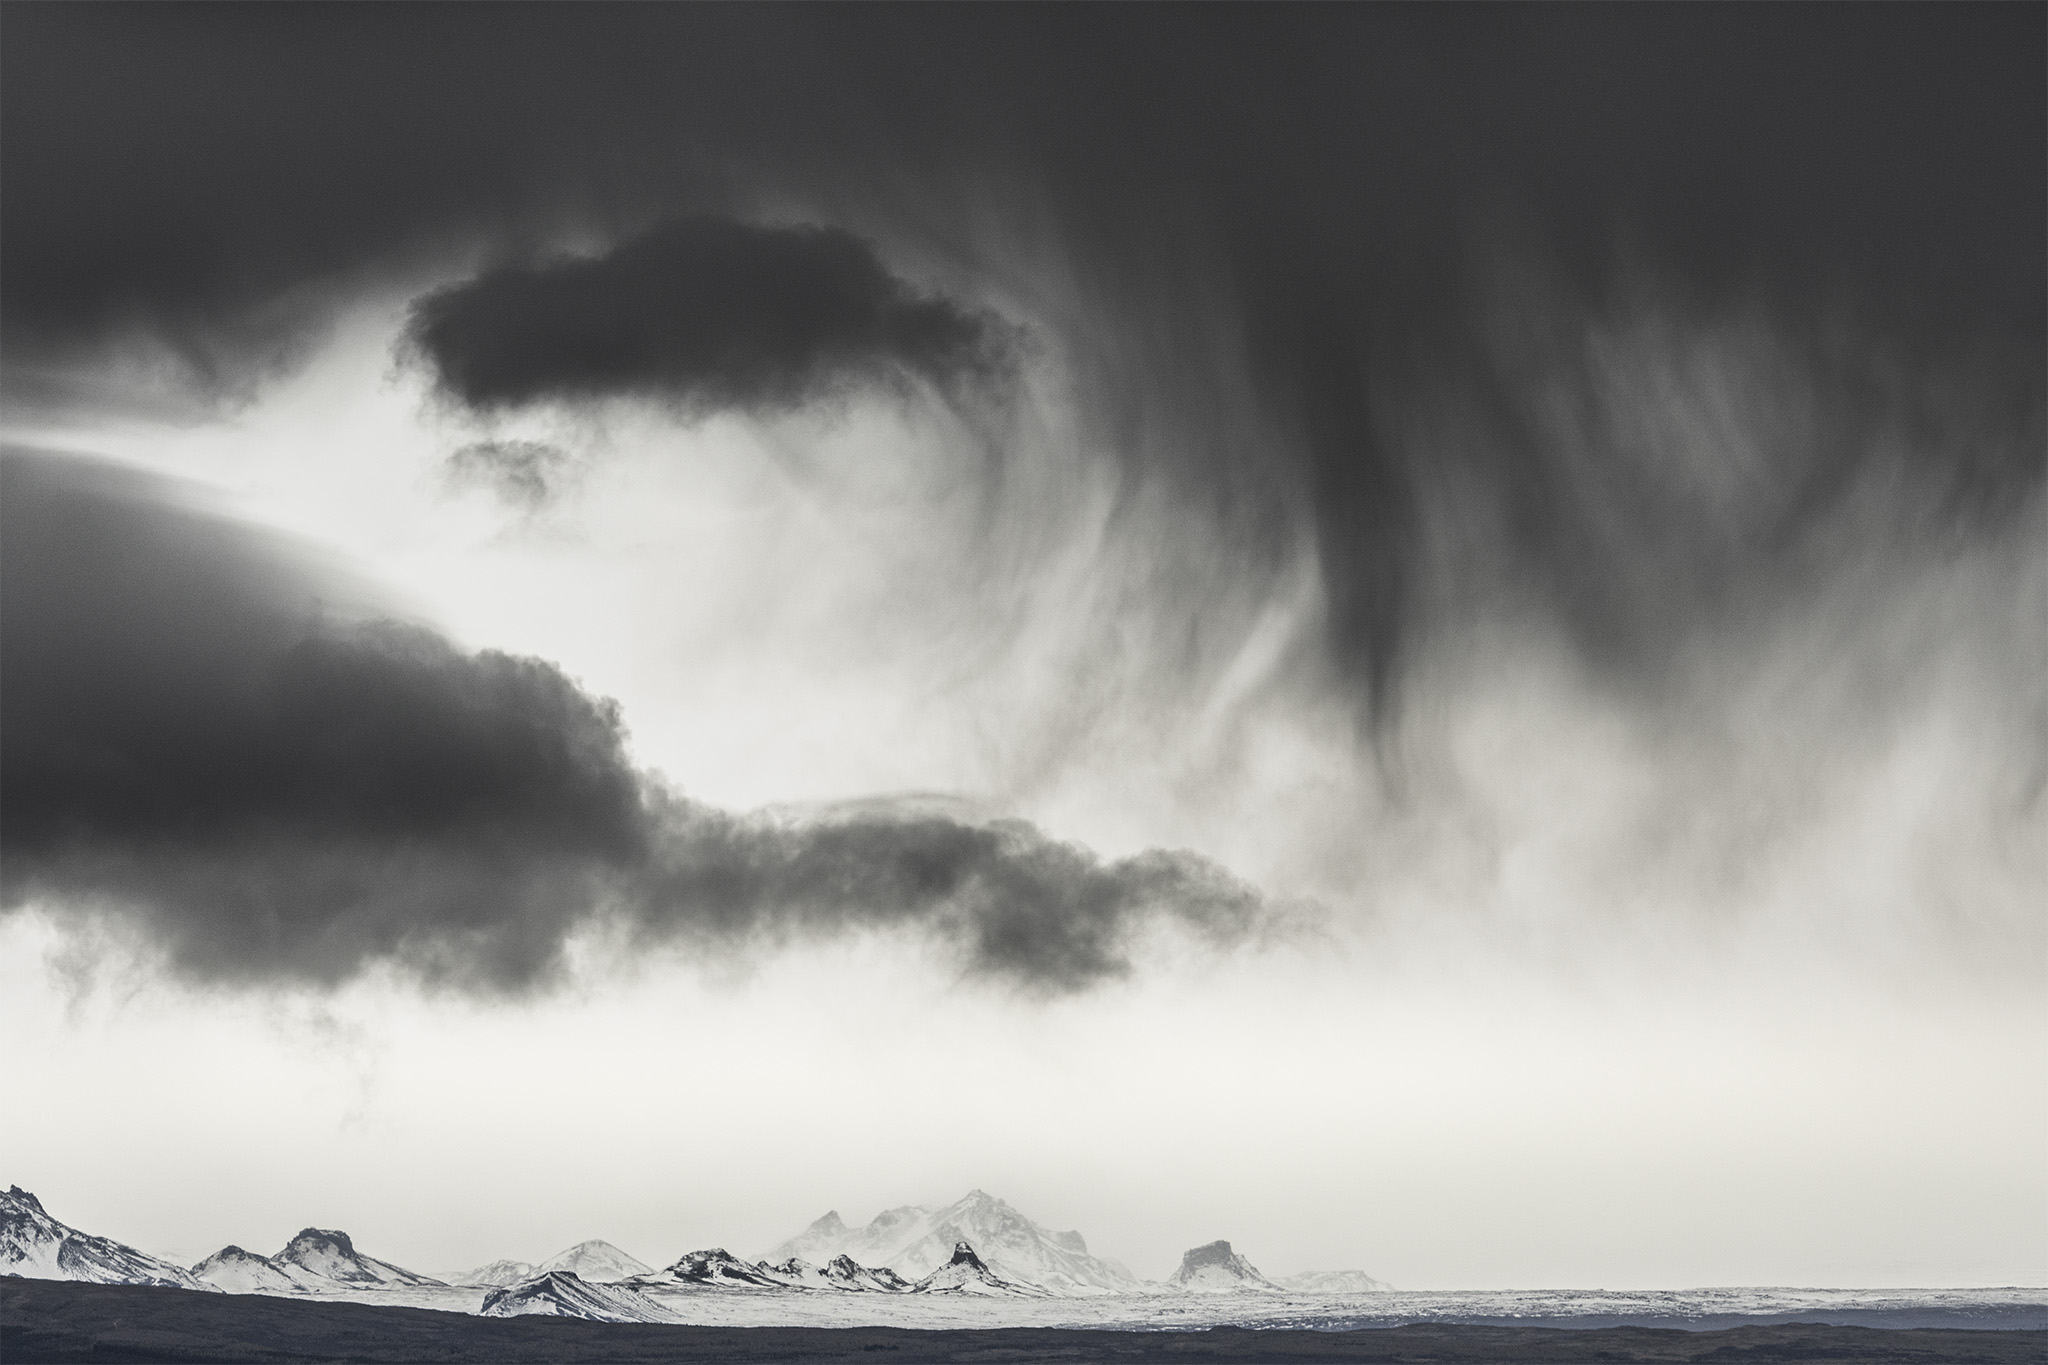 Landschaft in Island mit Bergen im Hintergrund uberragt von einigen dunklen Wolken, die Sturm andeuten.